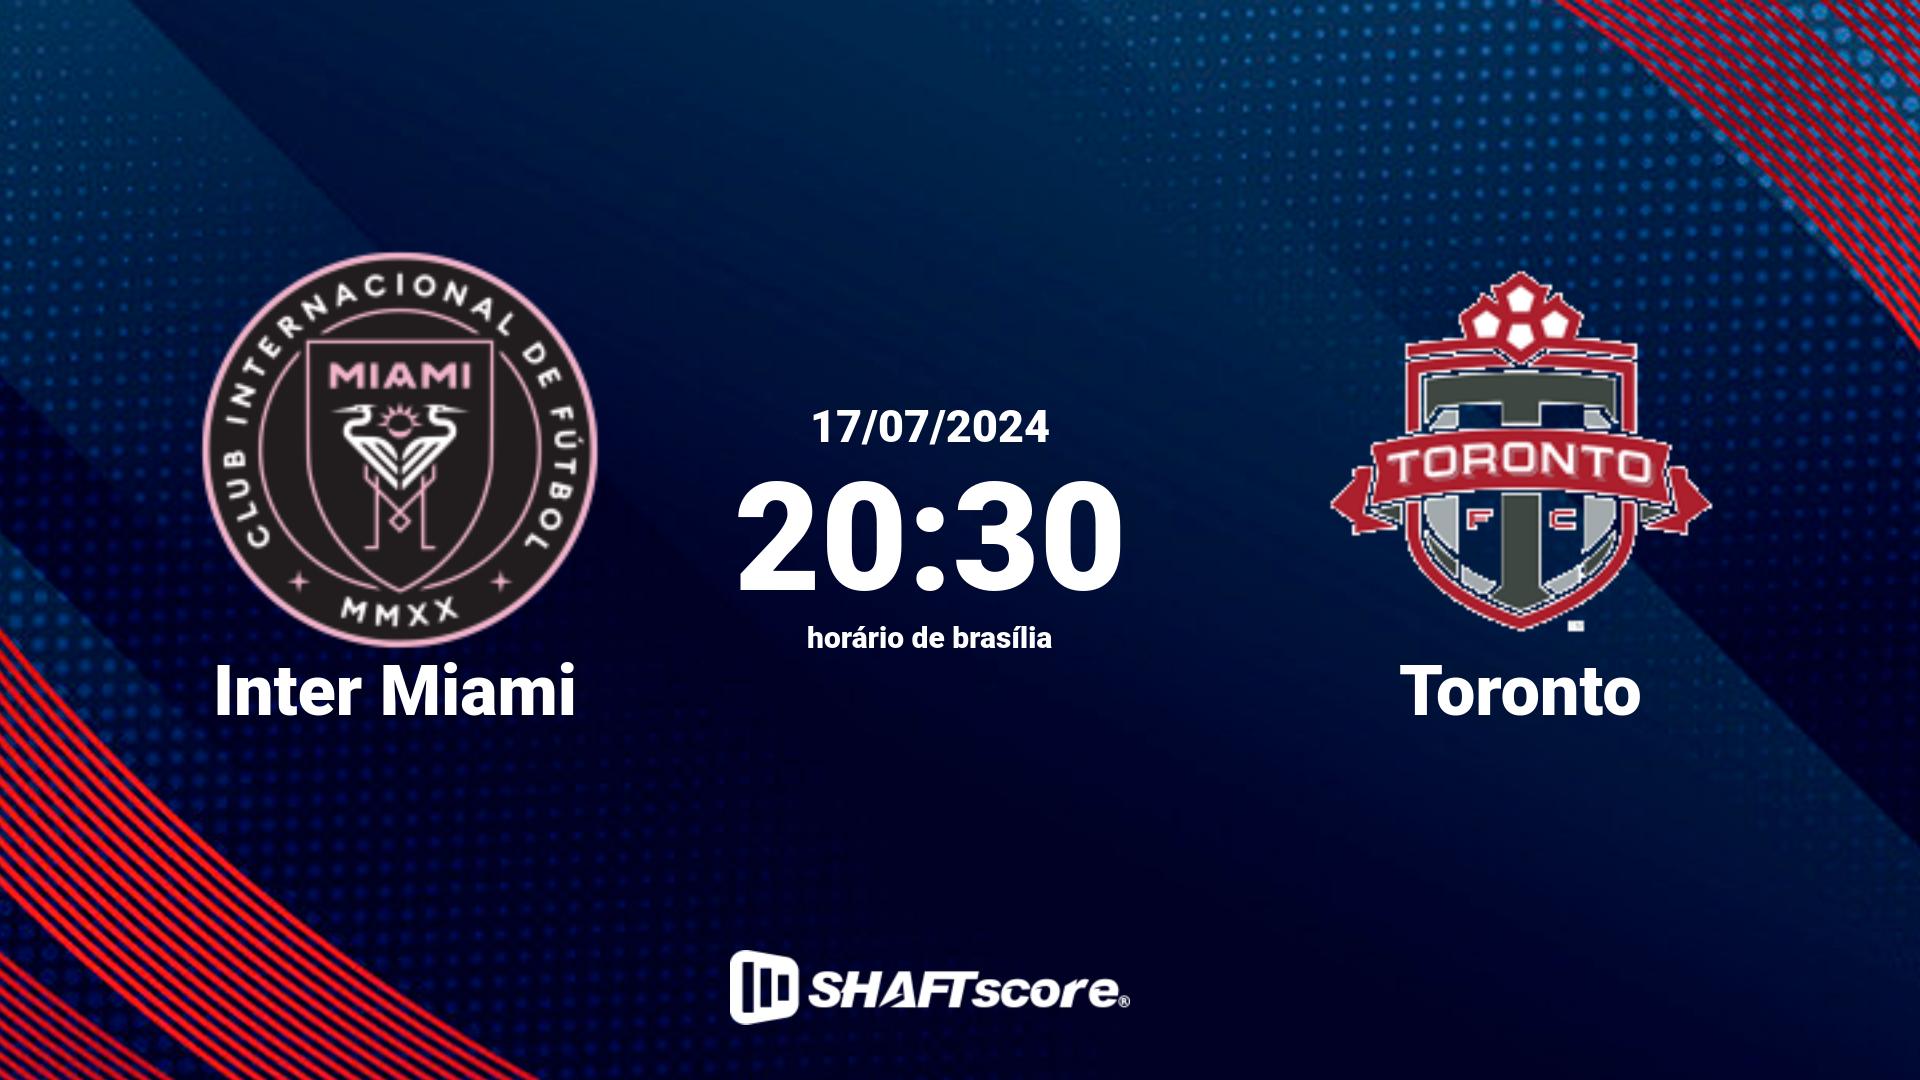 Estatísticas do jogo Inter Miami vs Toronto 17.07 20:30